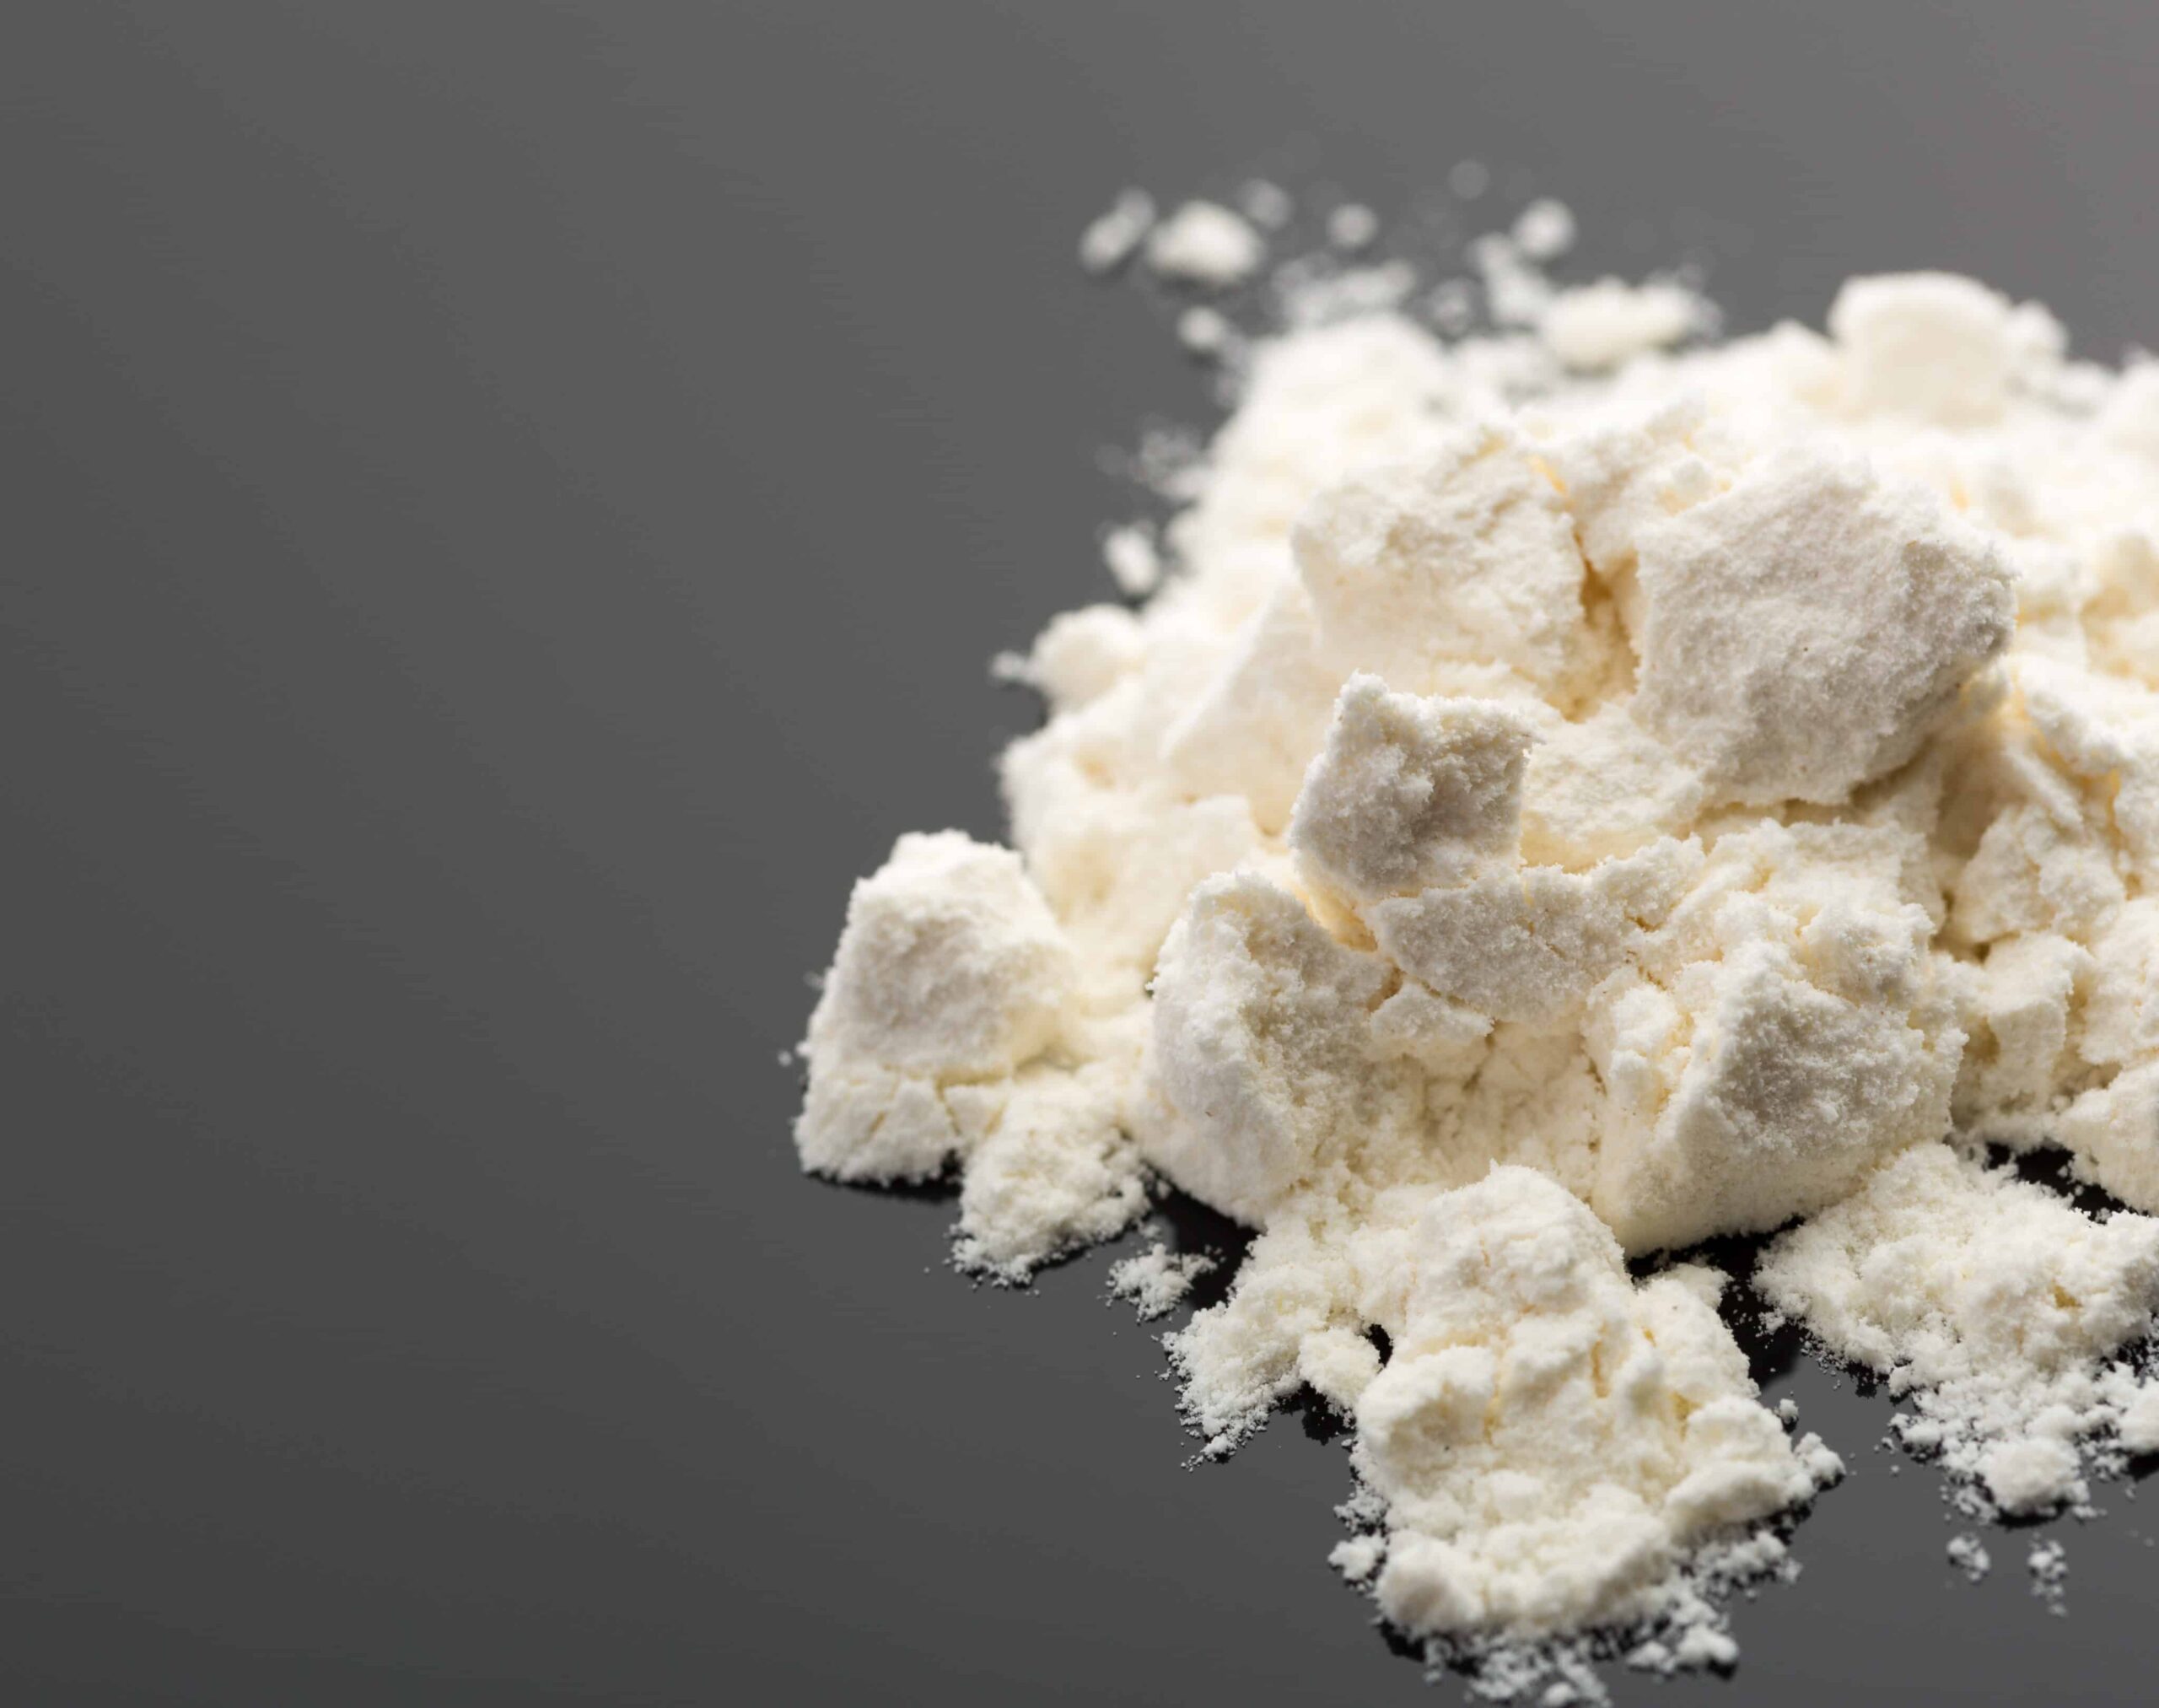 Lucy filer med Health Canada för att tillverka kokain, heroin